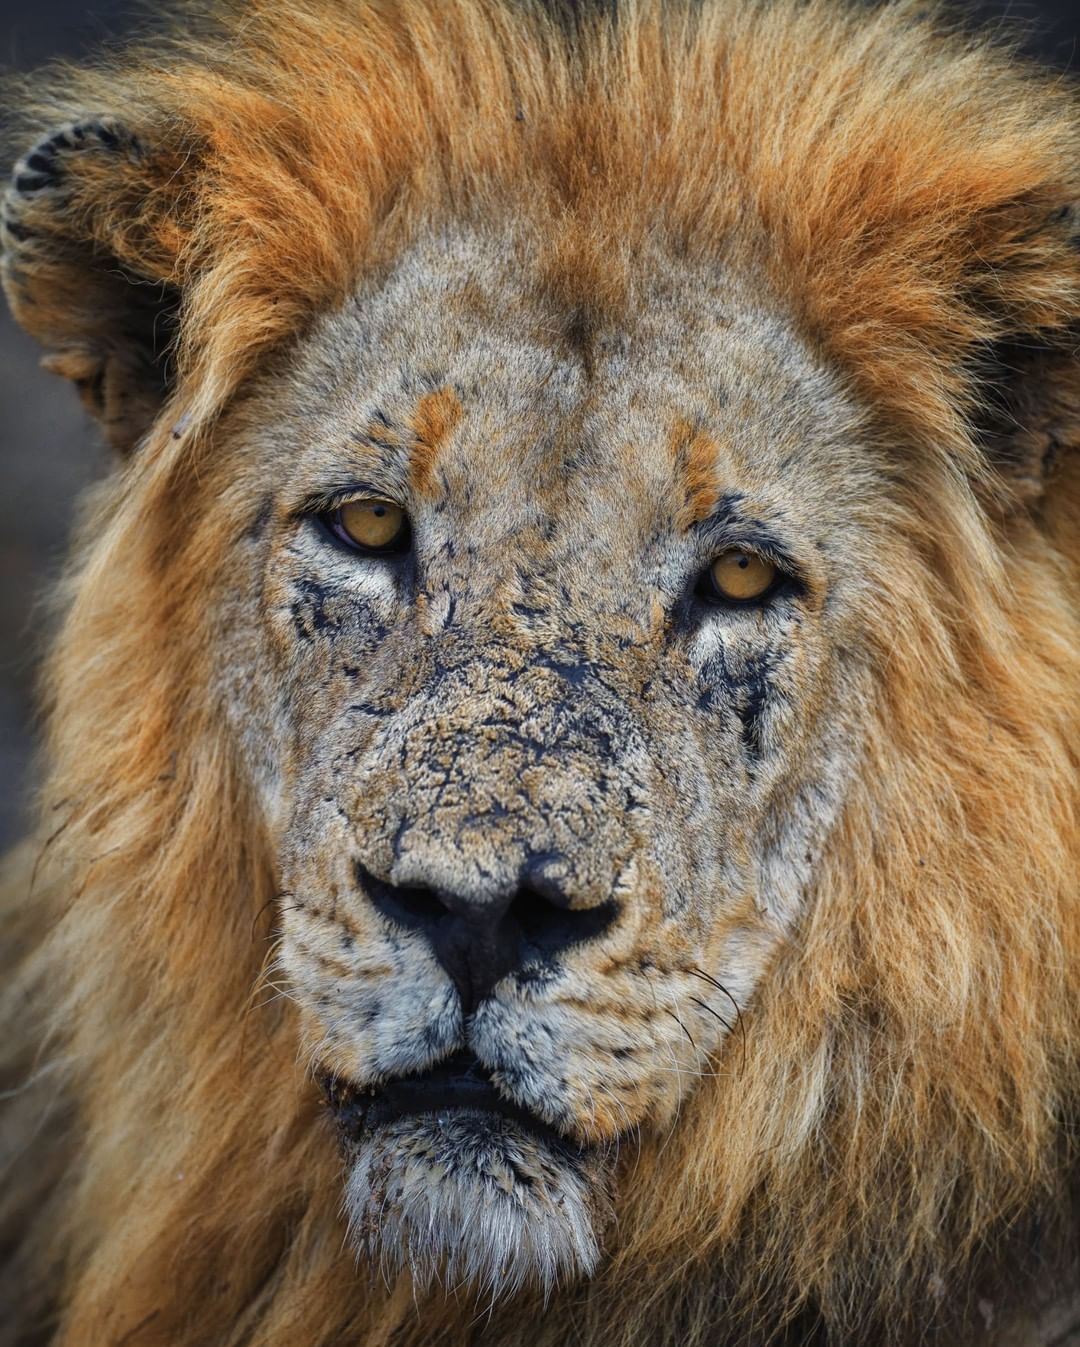 Este leão de 11 anos de idade é considerado um guerreiro entre os outros da espécie. Sua face é um distintivo de honra que mostra quantas batalhas ele enfrentou para tornar-se rei do seu território